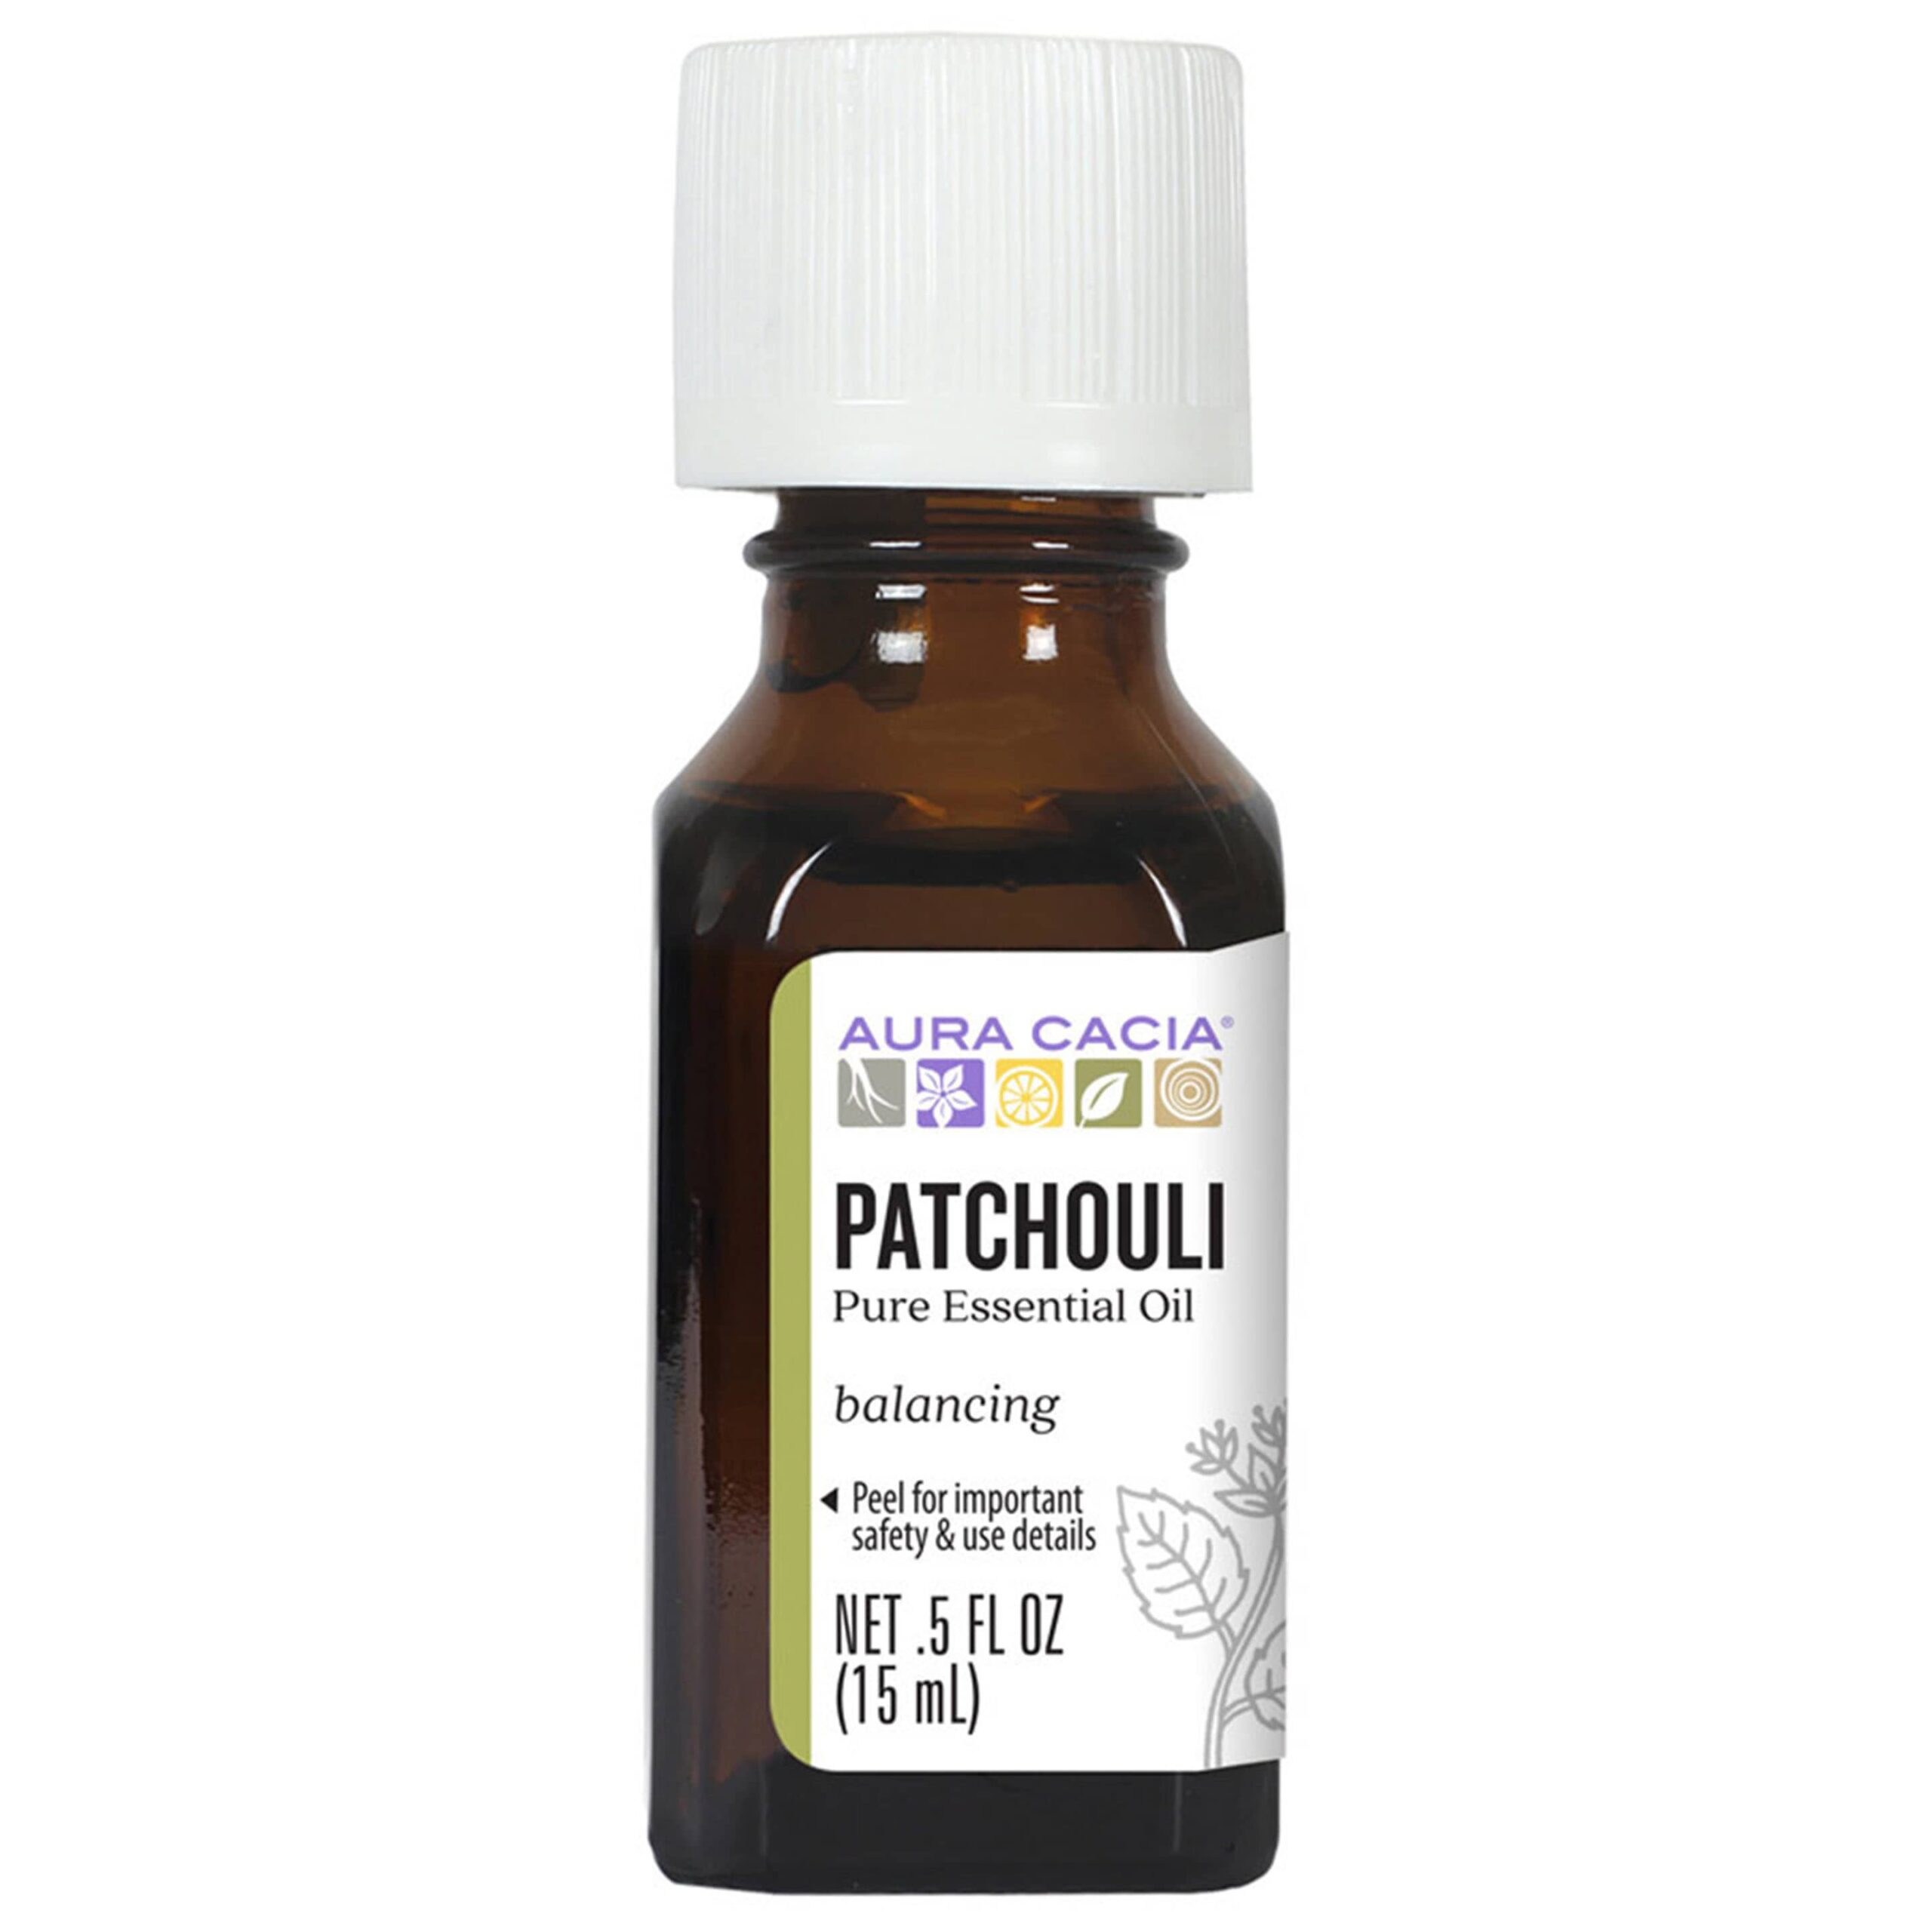 Patchouli Dark Essential Oil - Aura Cacia